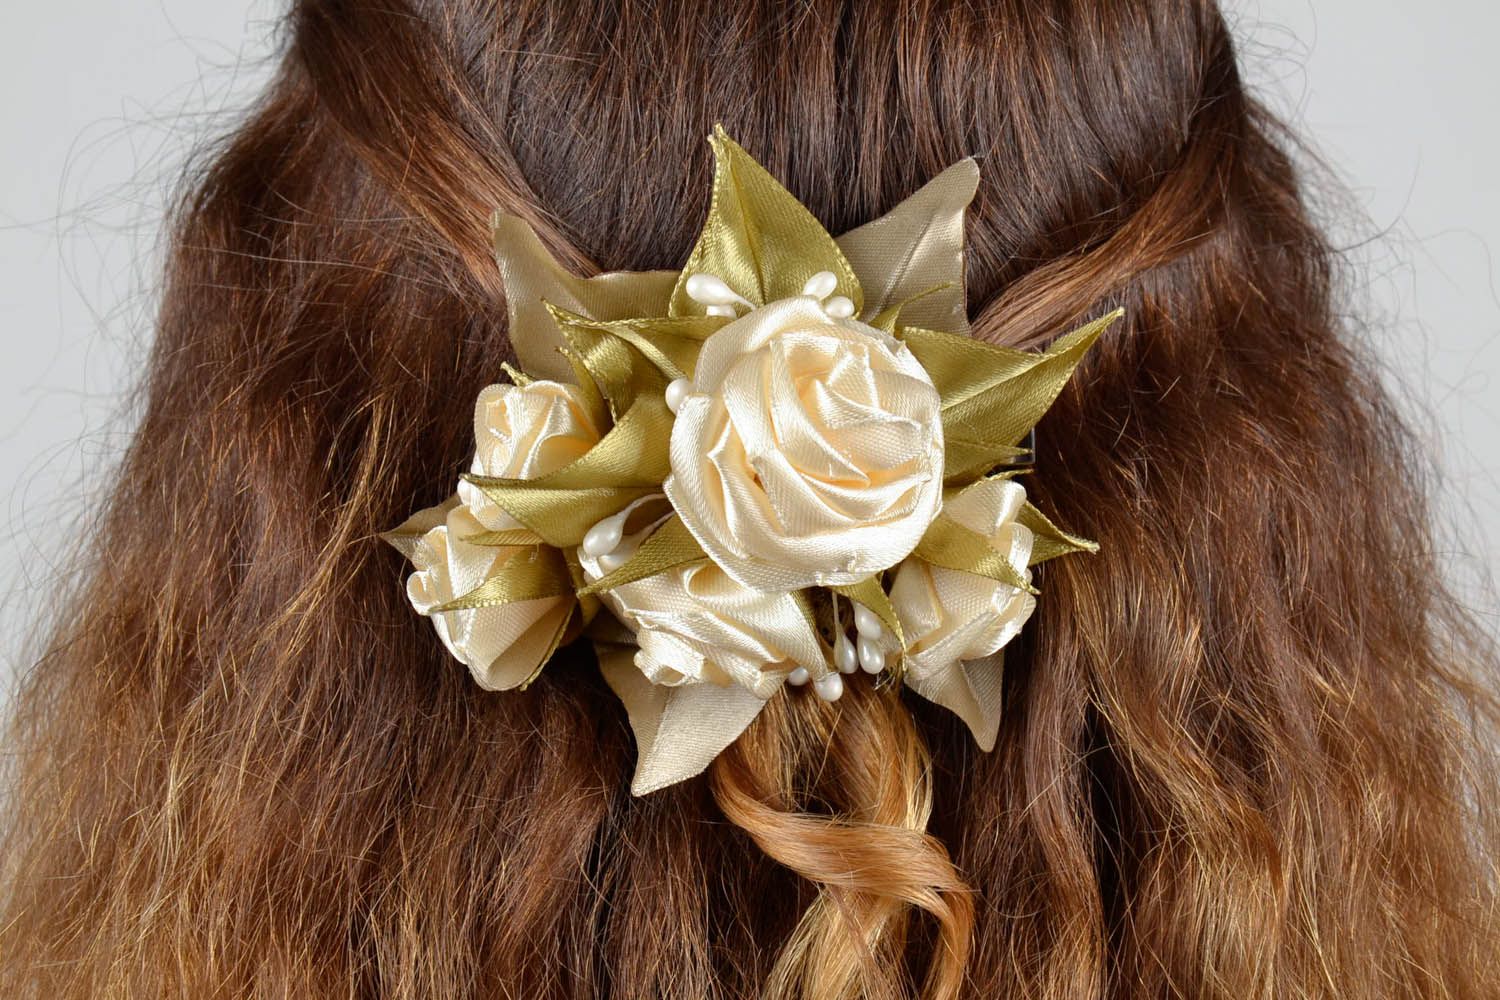 Grampo com flores bonito para cabelo acessórios de cabelo femininos artesanais  foto 5